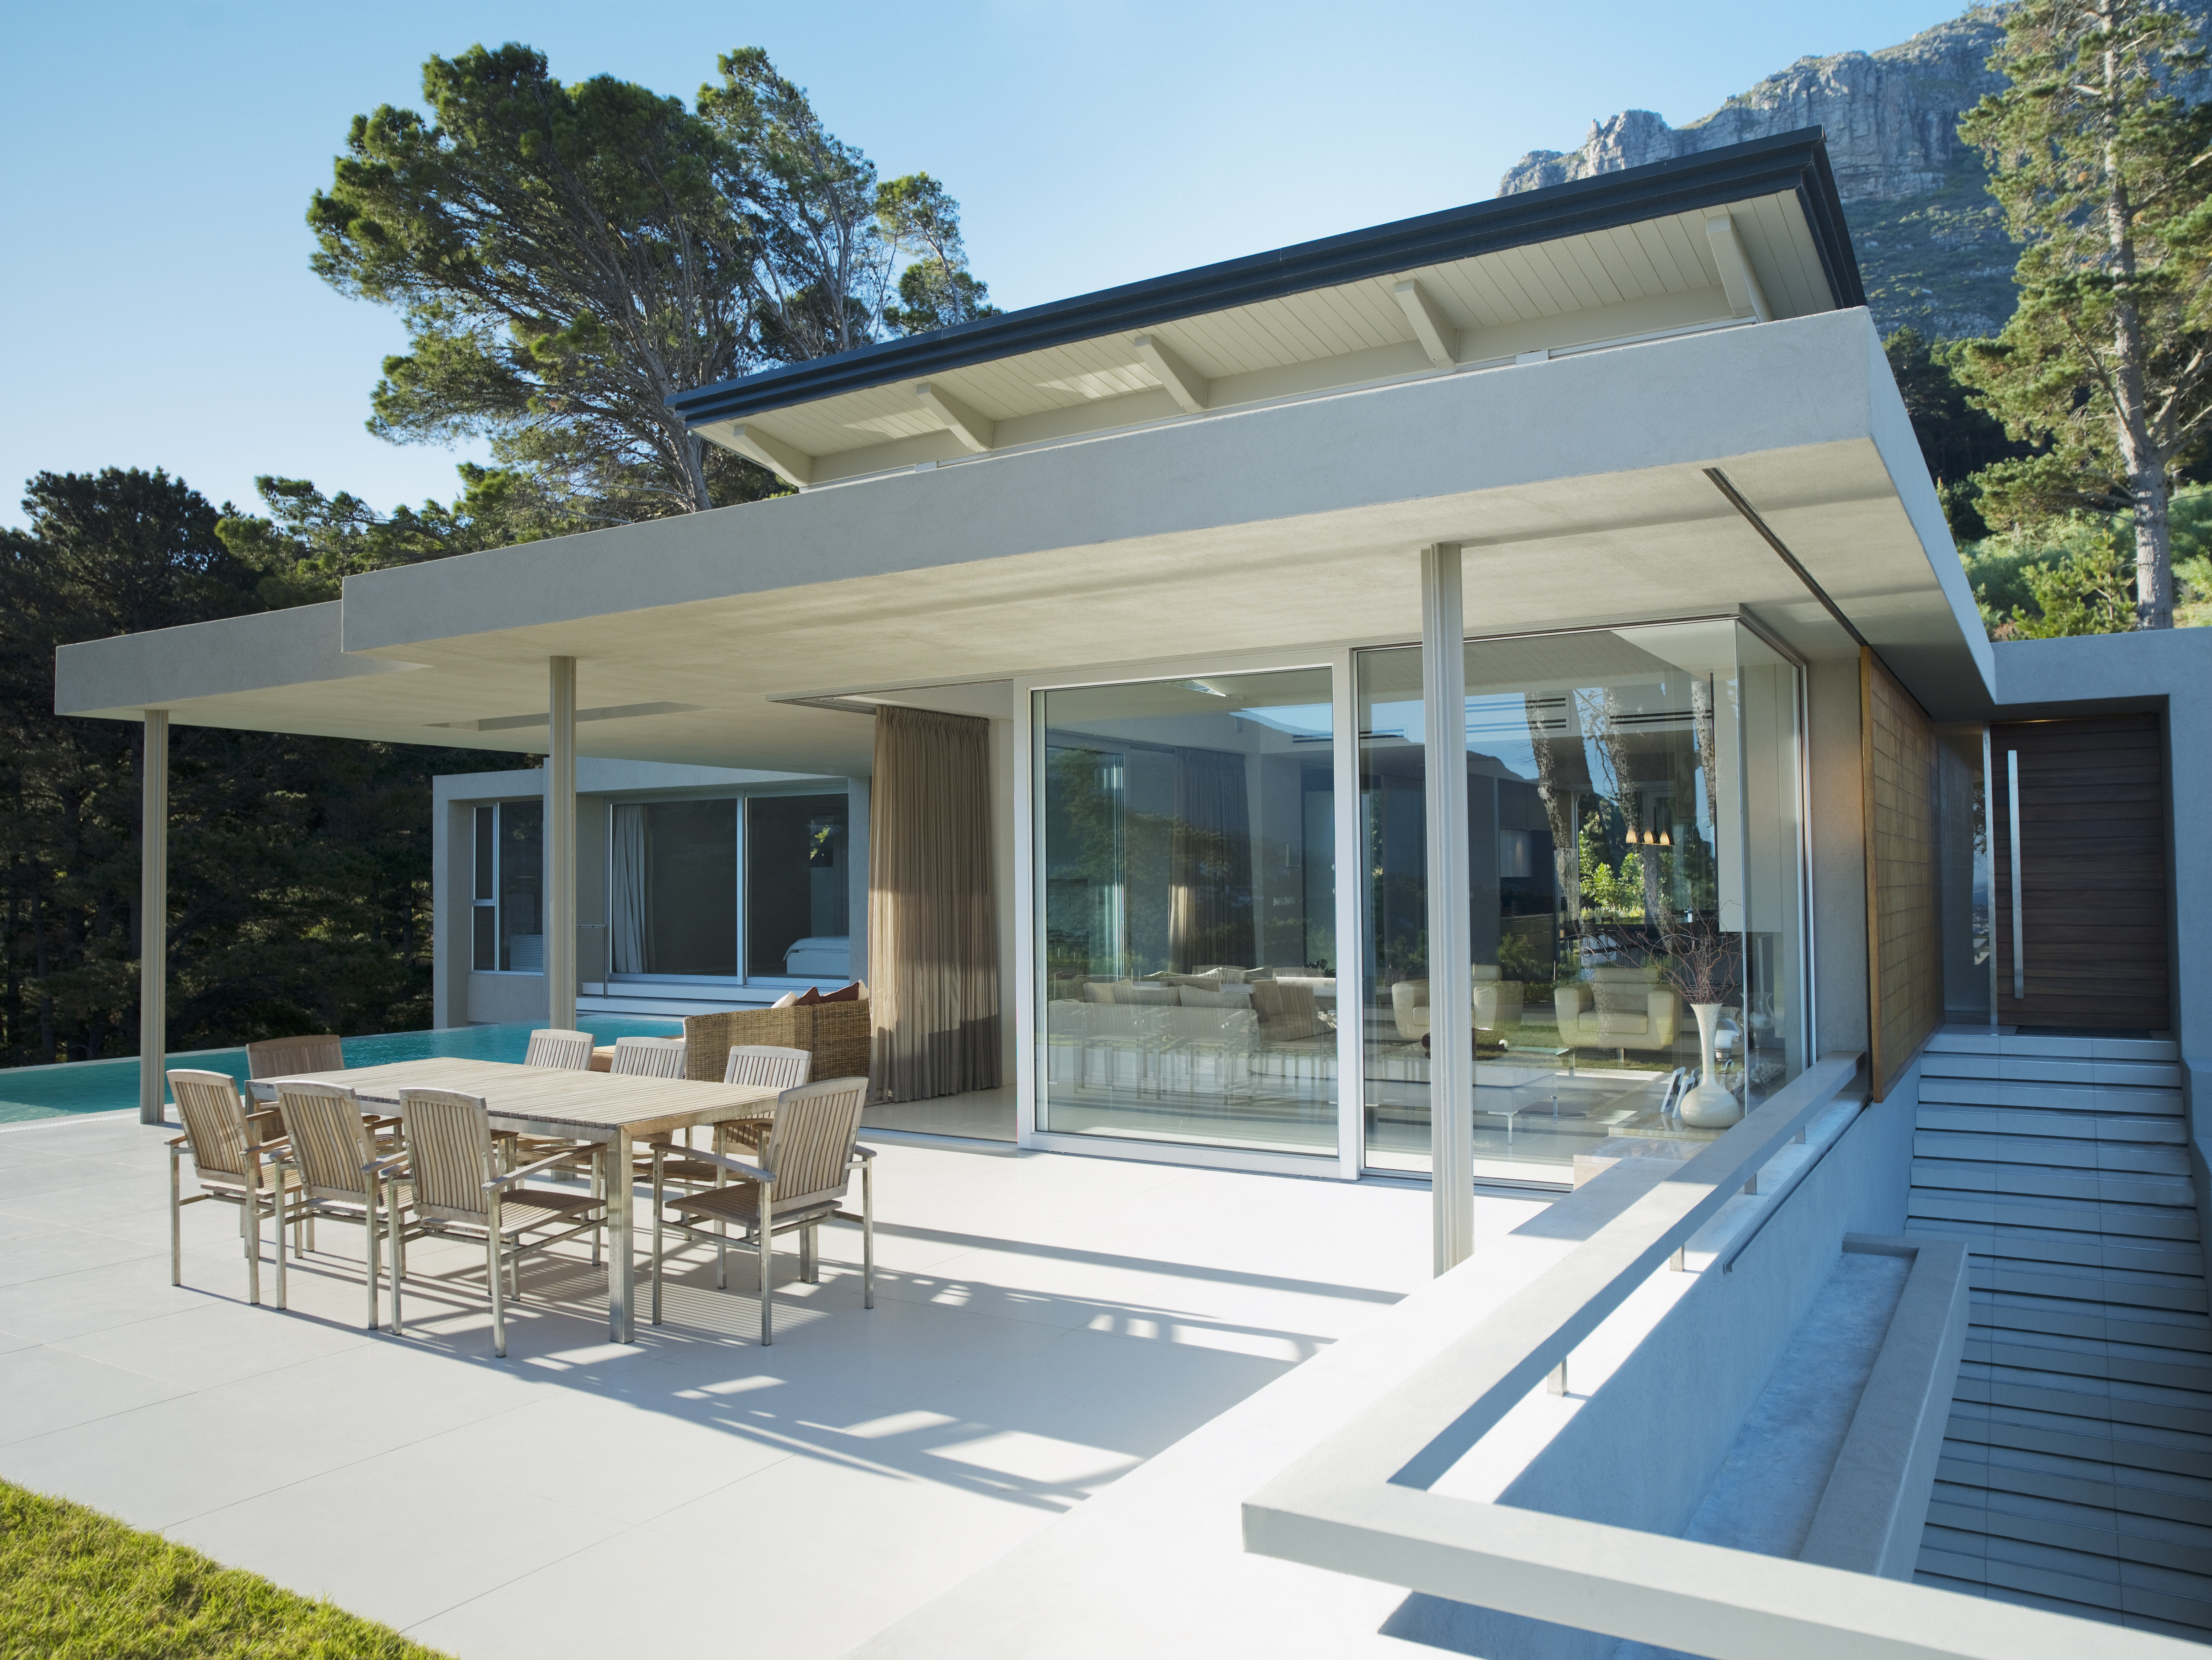 Sonnenschutz für die Terrasse – Welche Möglichkeiten gibt es?